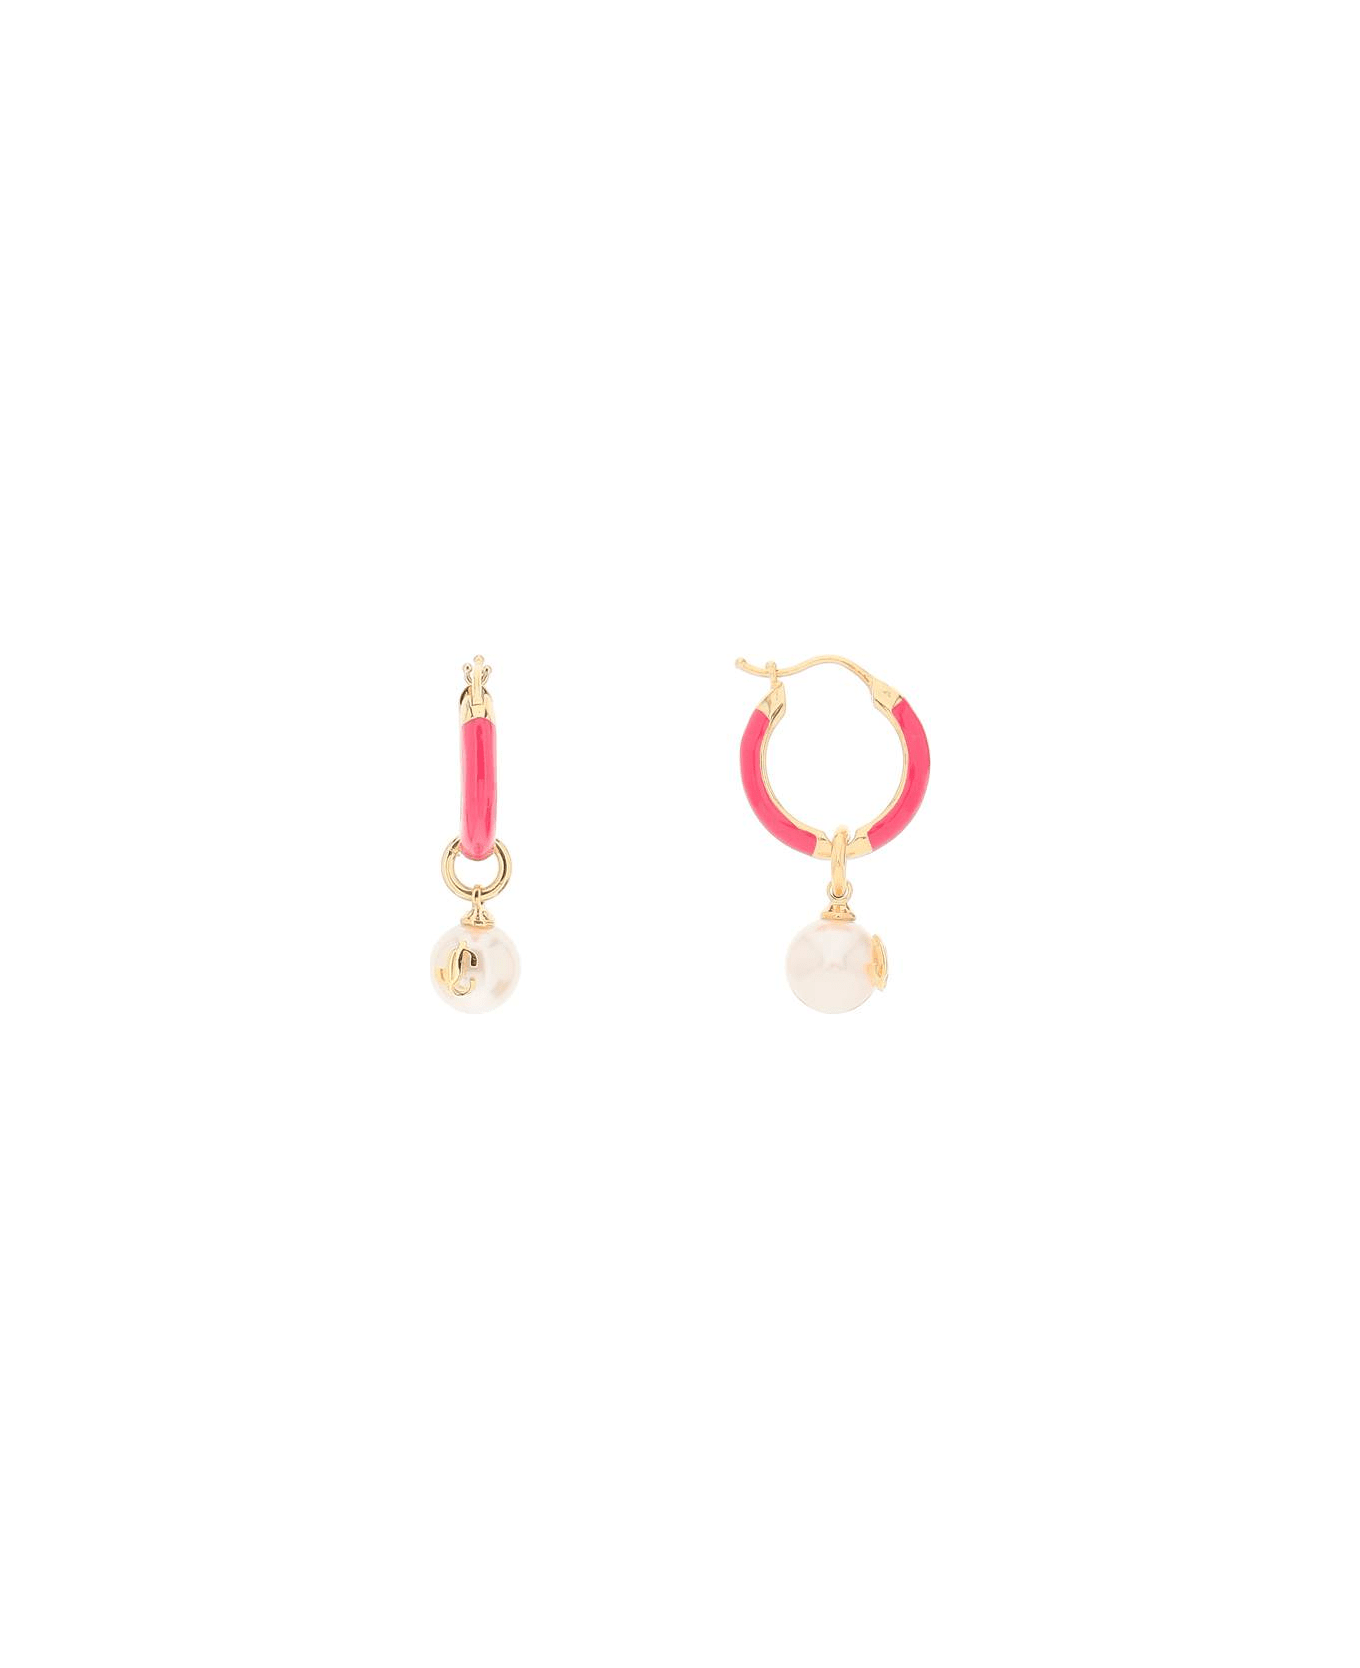 Jimmy Choo Hoop Earrings With Pearls - GOLD FUCHSIA (White)